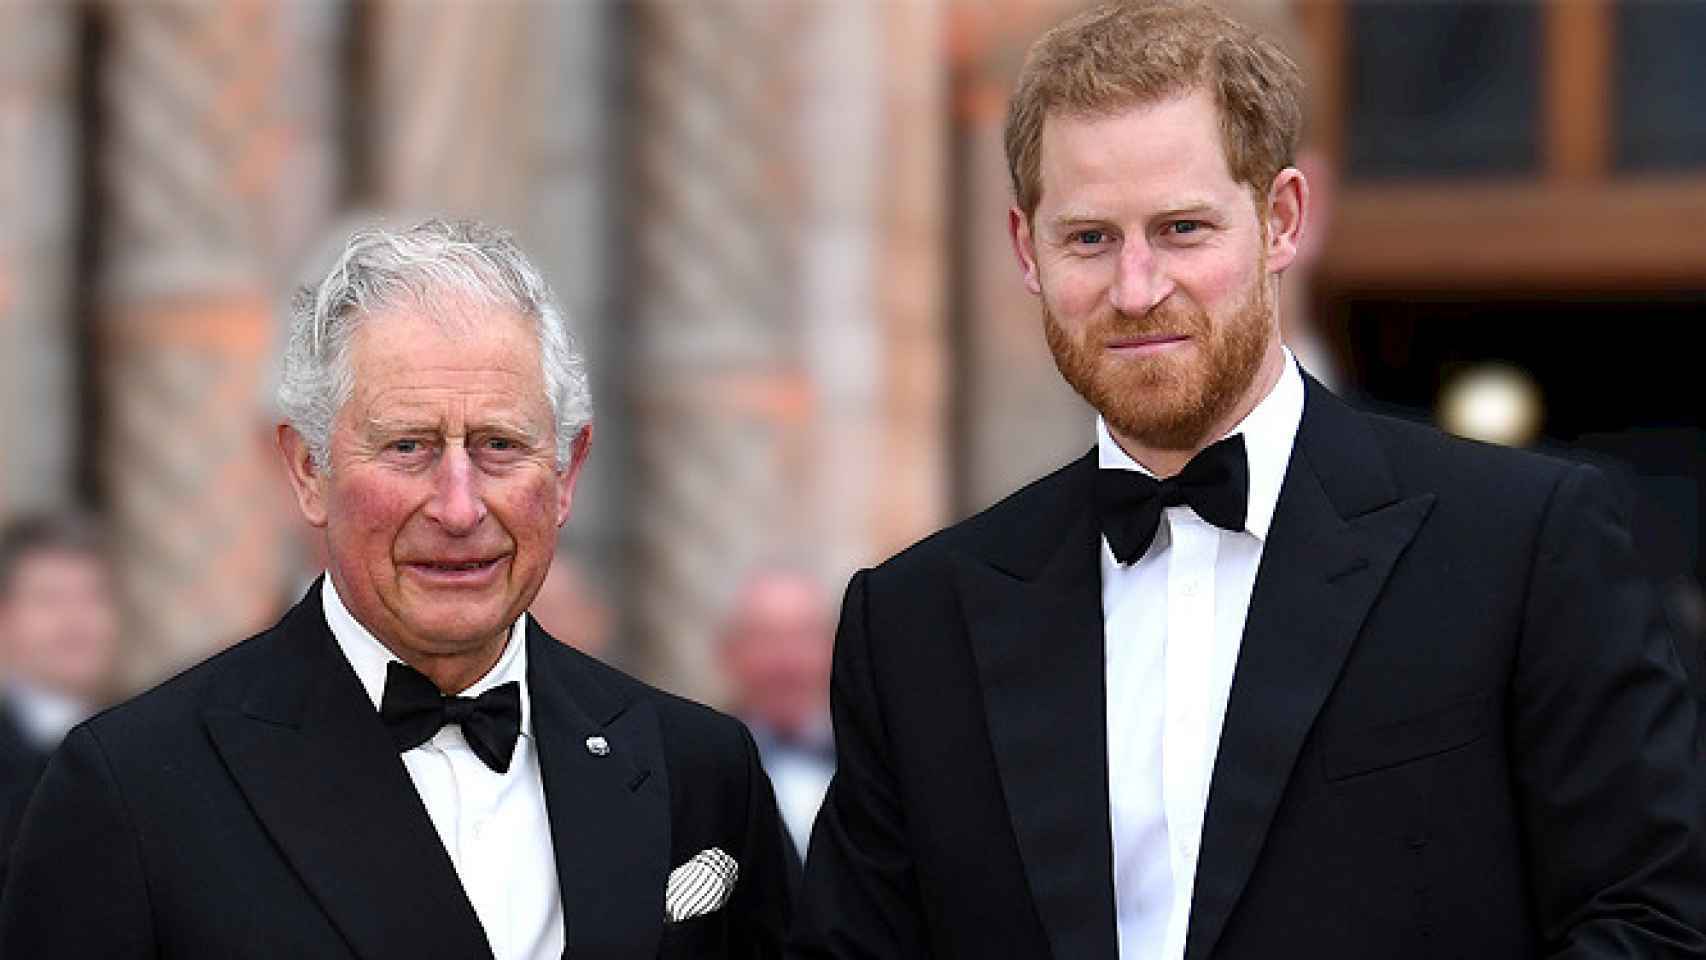 rey Carlos III y príncipe Harry (Imagen difundida por medios internacionales)